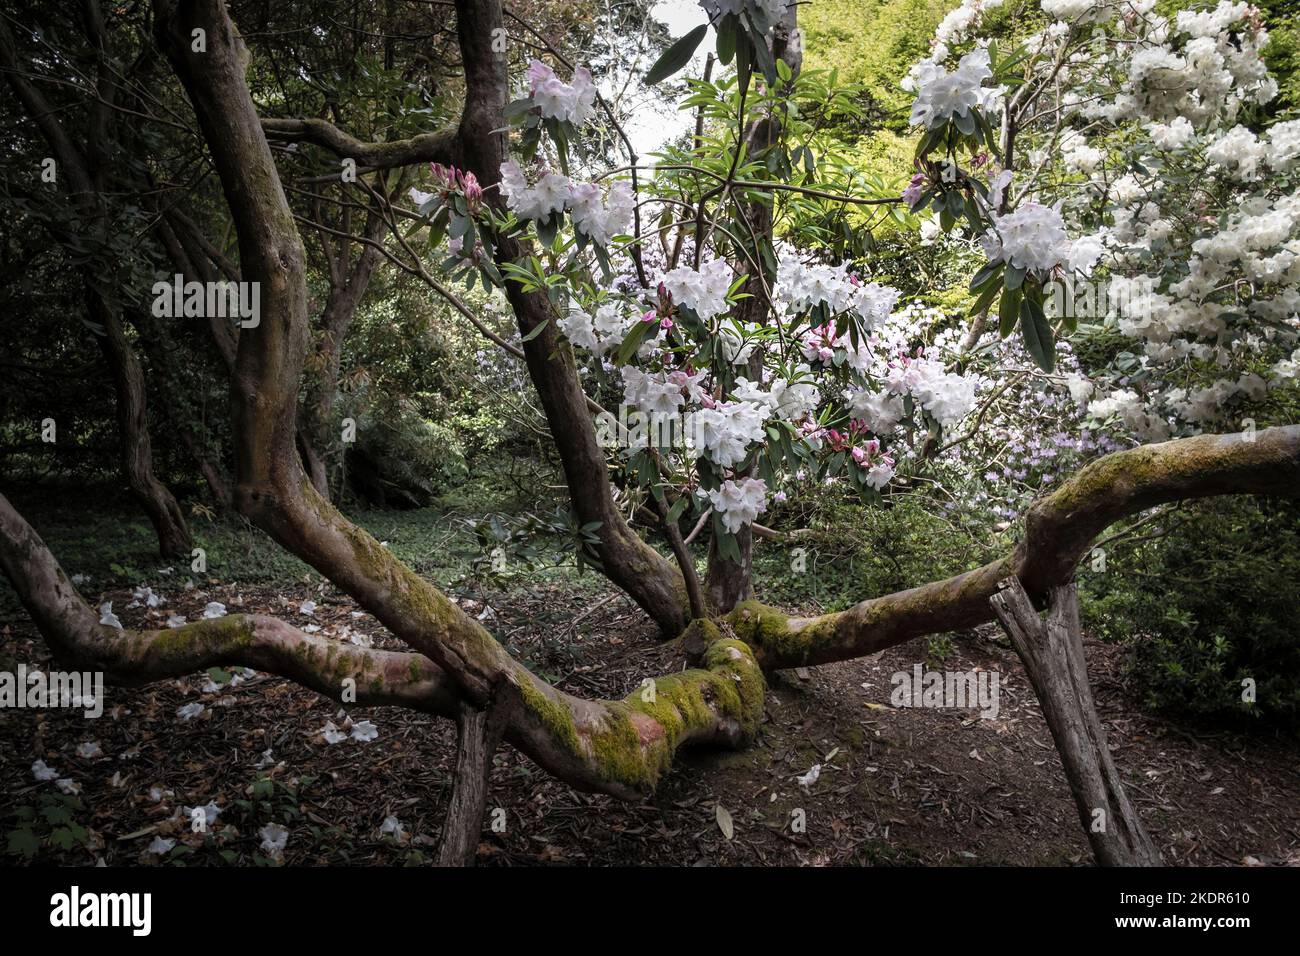 Ein reifer Rhododendron, der im wilden subtropischen Penjjick Garden in Cornwall wächst. Penjerrick Garden wird als echter Dschungelgarten von Cornwalls i anerkannt Stockfoto